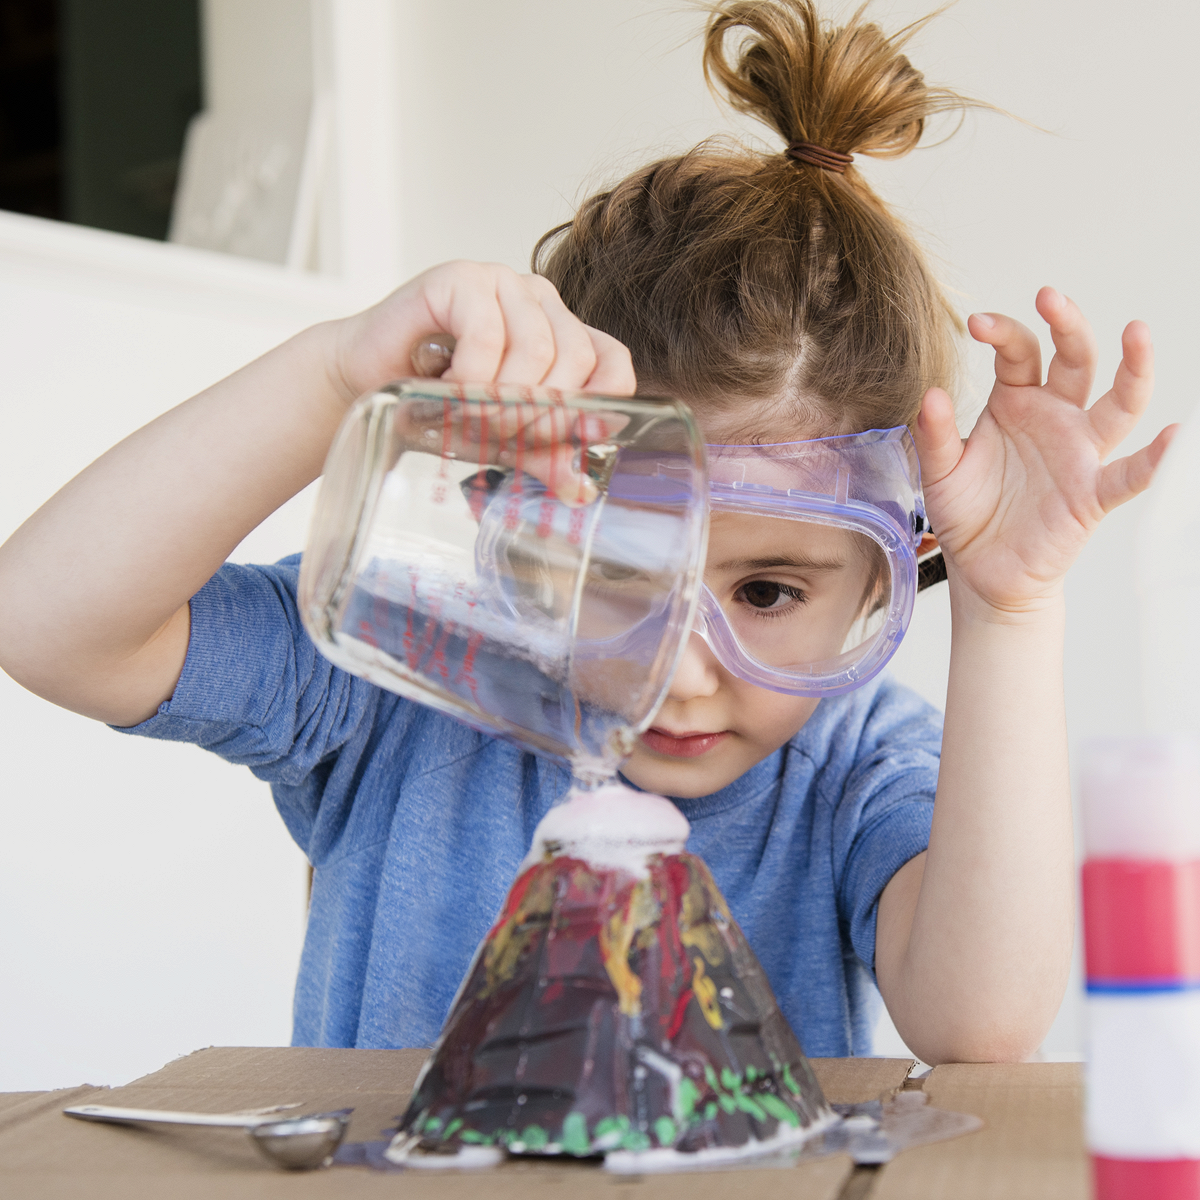 Как увлечь детей наукой на каникулах? 6 небанальных домашних опытов от Sciencely